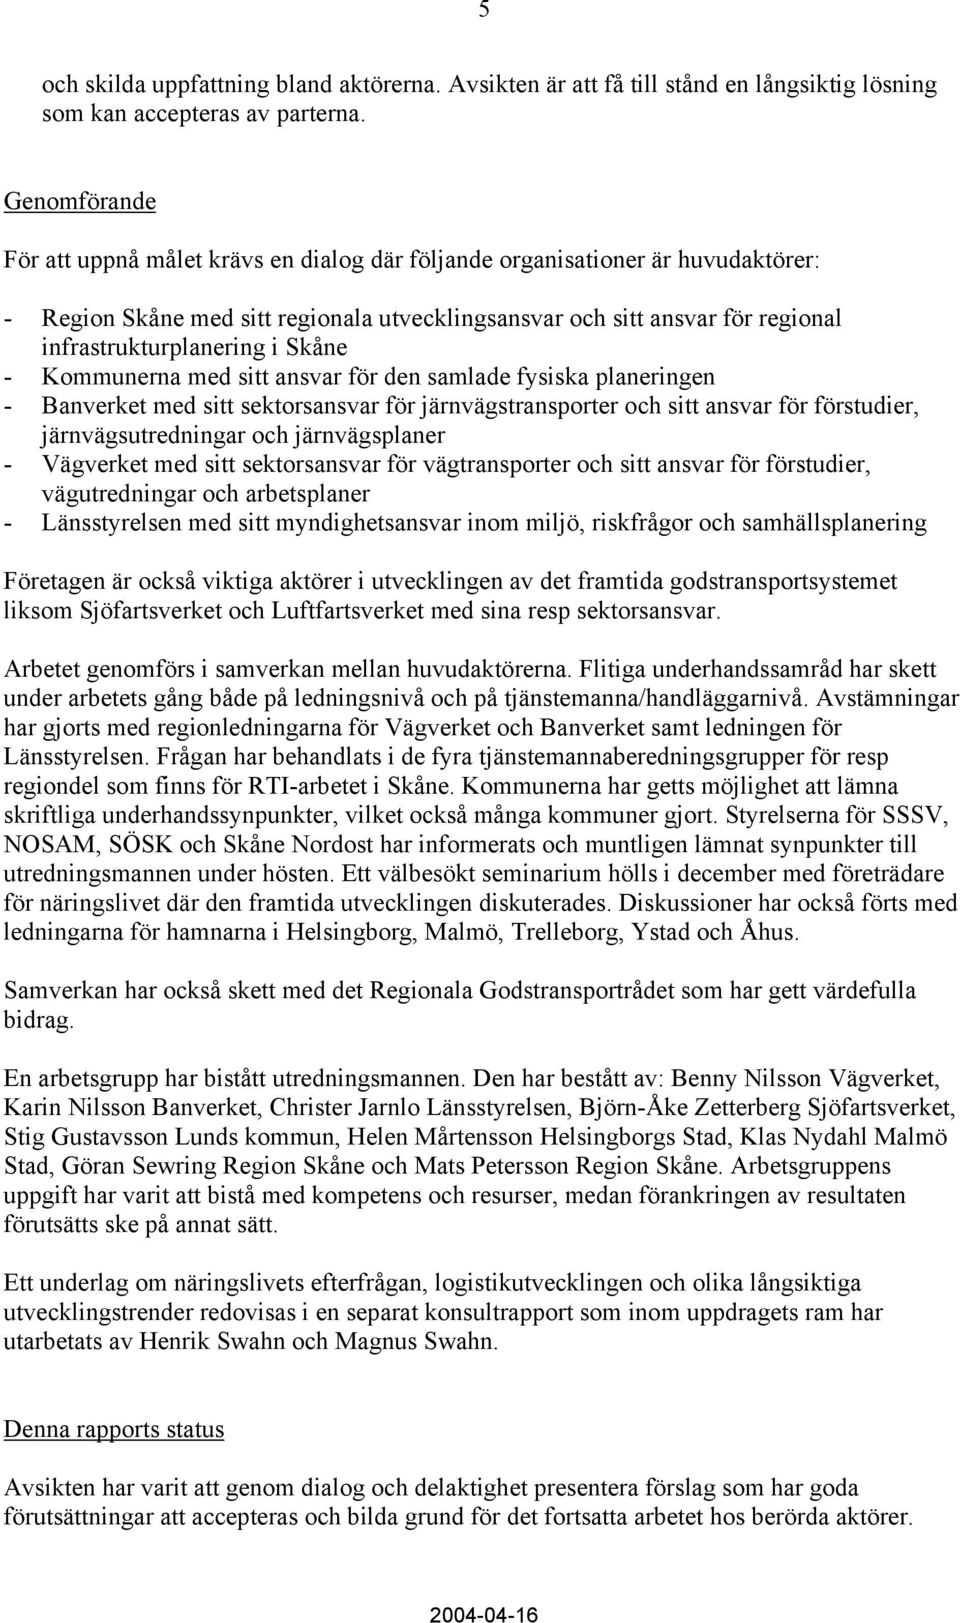 Skåne - Kommunerna med sitt ansvar för den samlade fysiska planeringen - Banverket med sitt sektorsansvar för järnvägstransporter och sitt ansvar för förstudier, järnvägsutredningar och